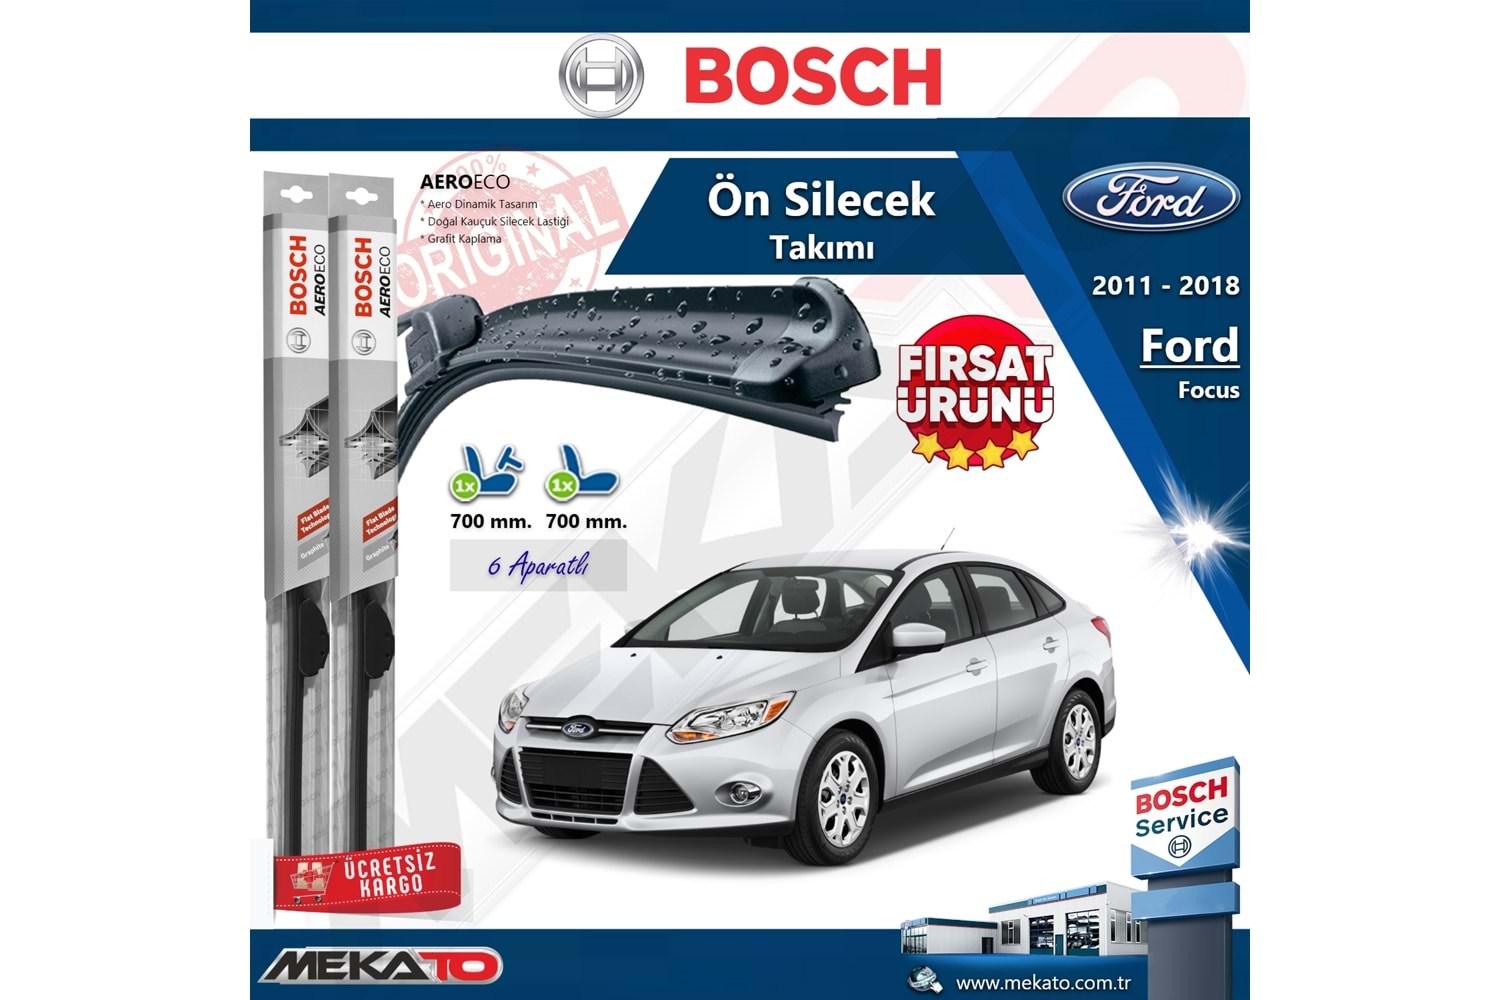 Ford Focus 3 Sedan Ön Silecek Takımı Bosch Aero Eco 2011-2018